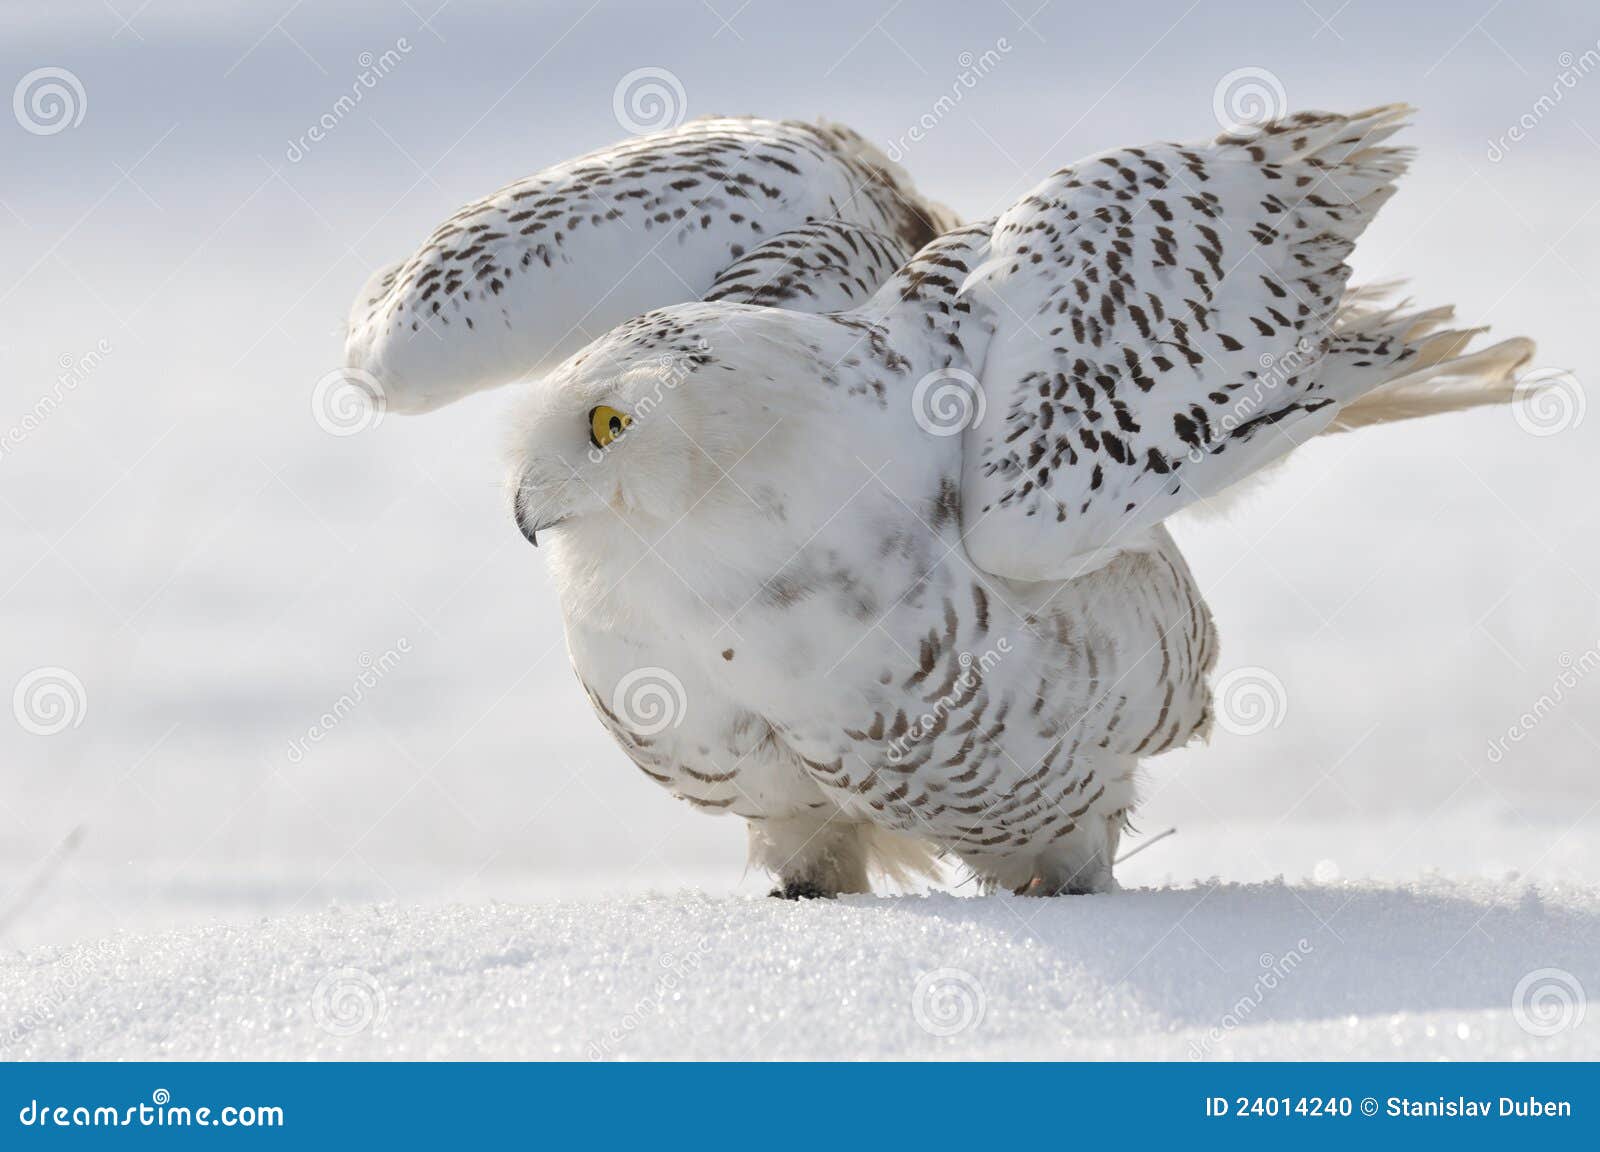 snowy owl flap wings